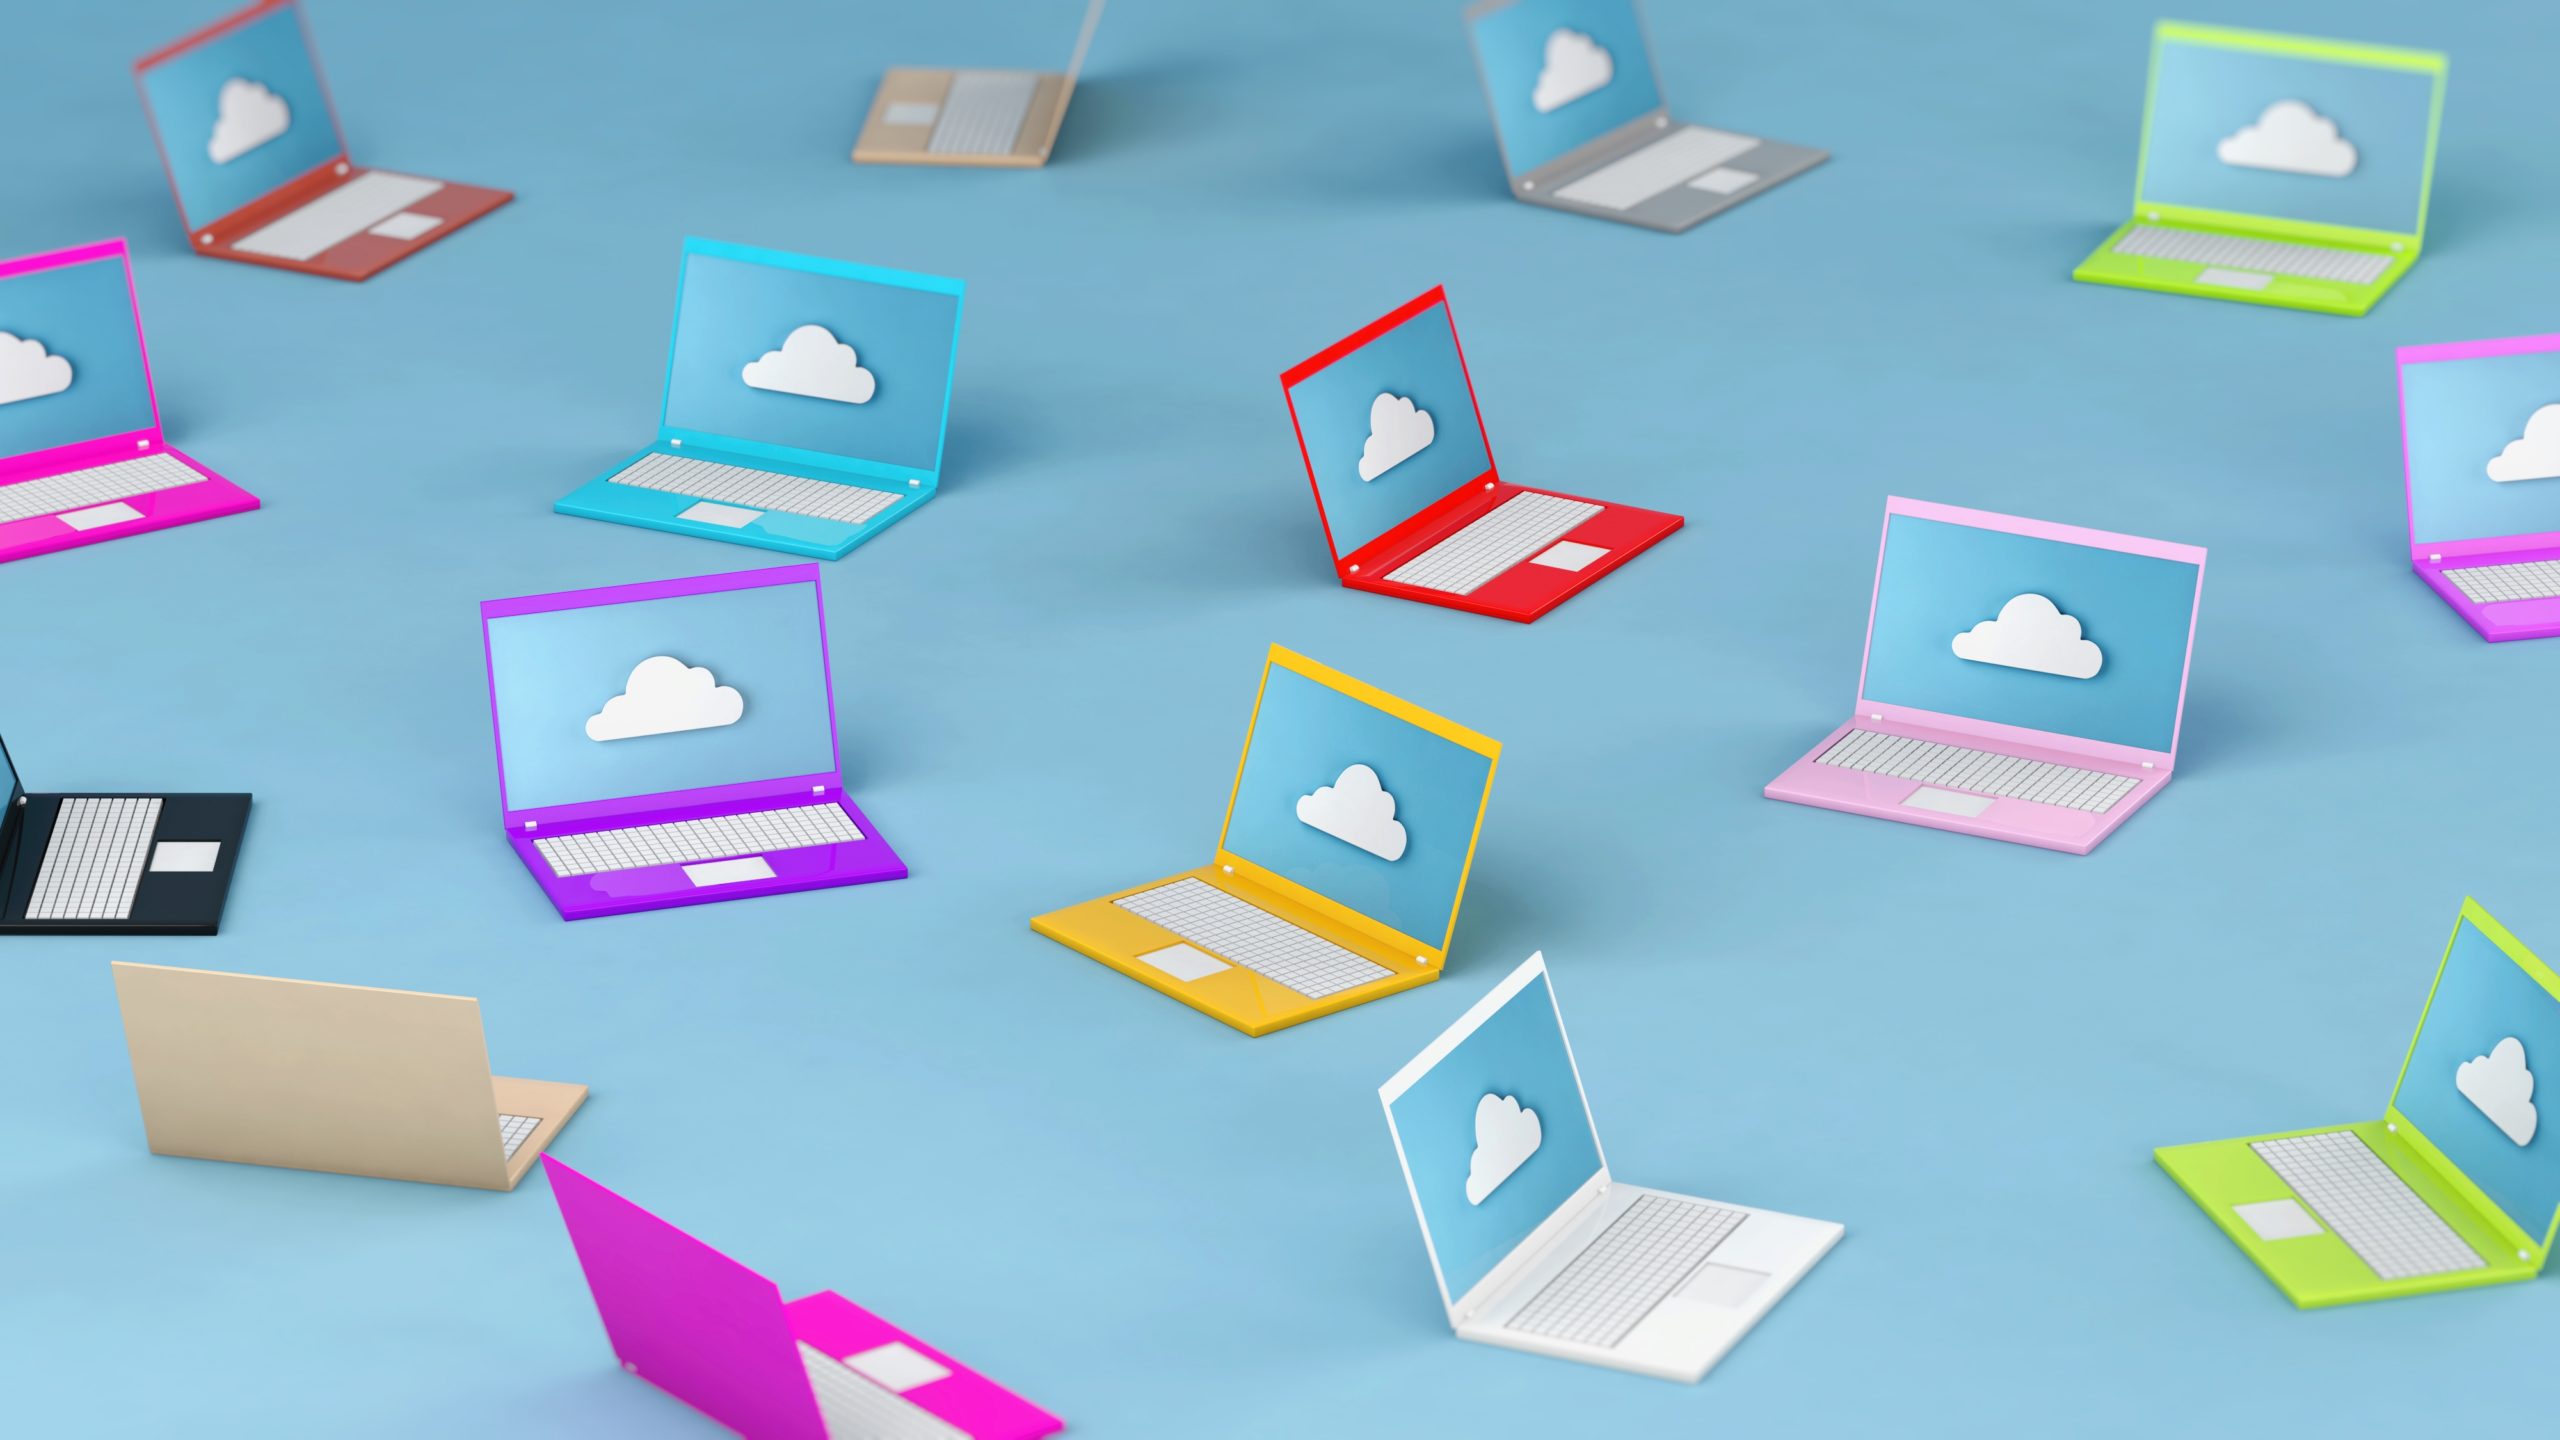 Die Illustration zeigt viele bunte Laptops mit jeweils einem Cloud-Symbol auf dem Bildschirm.